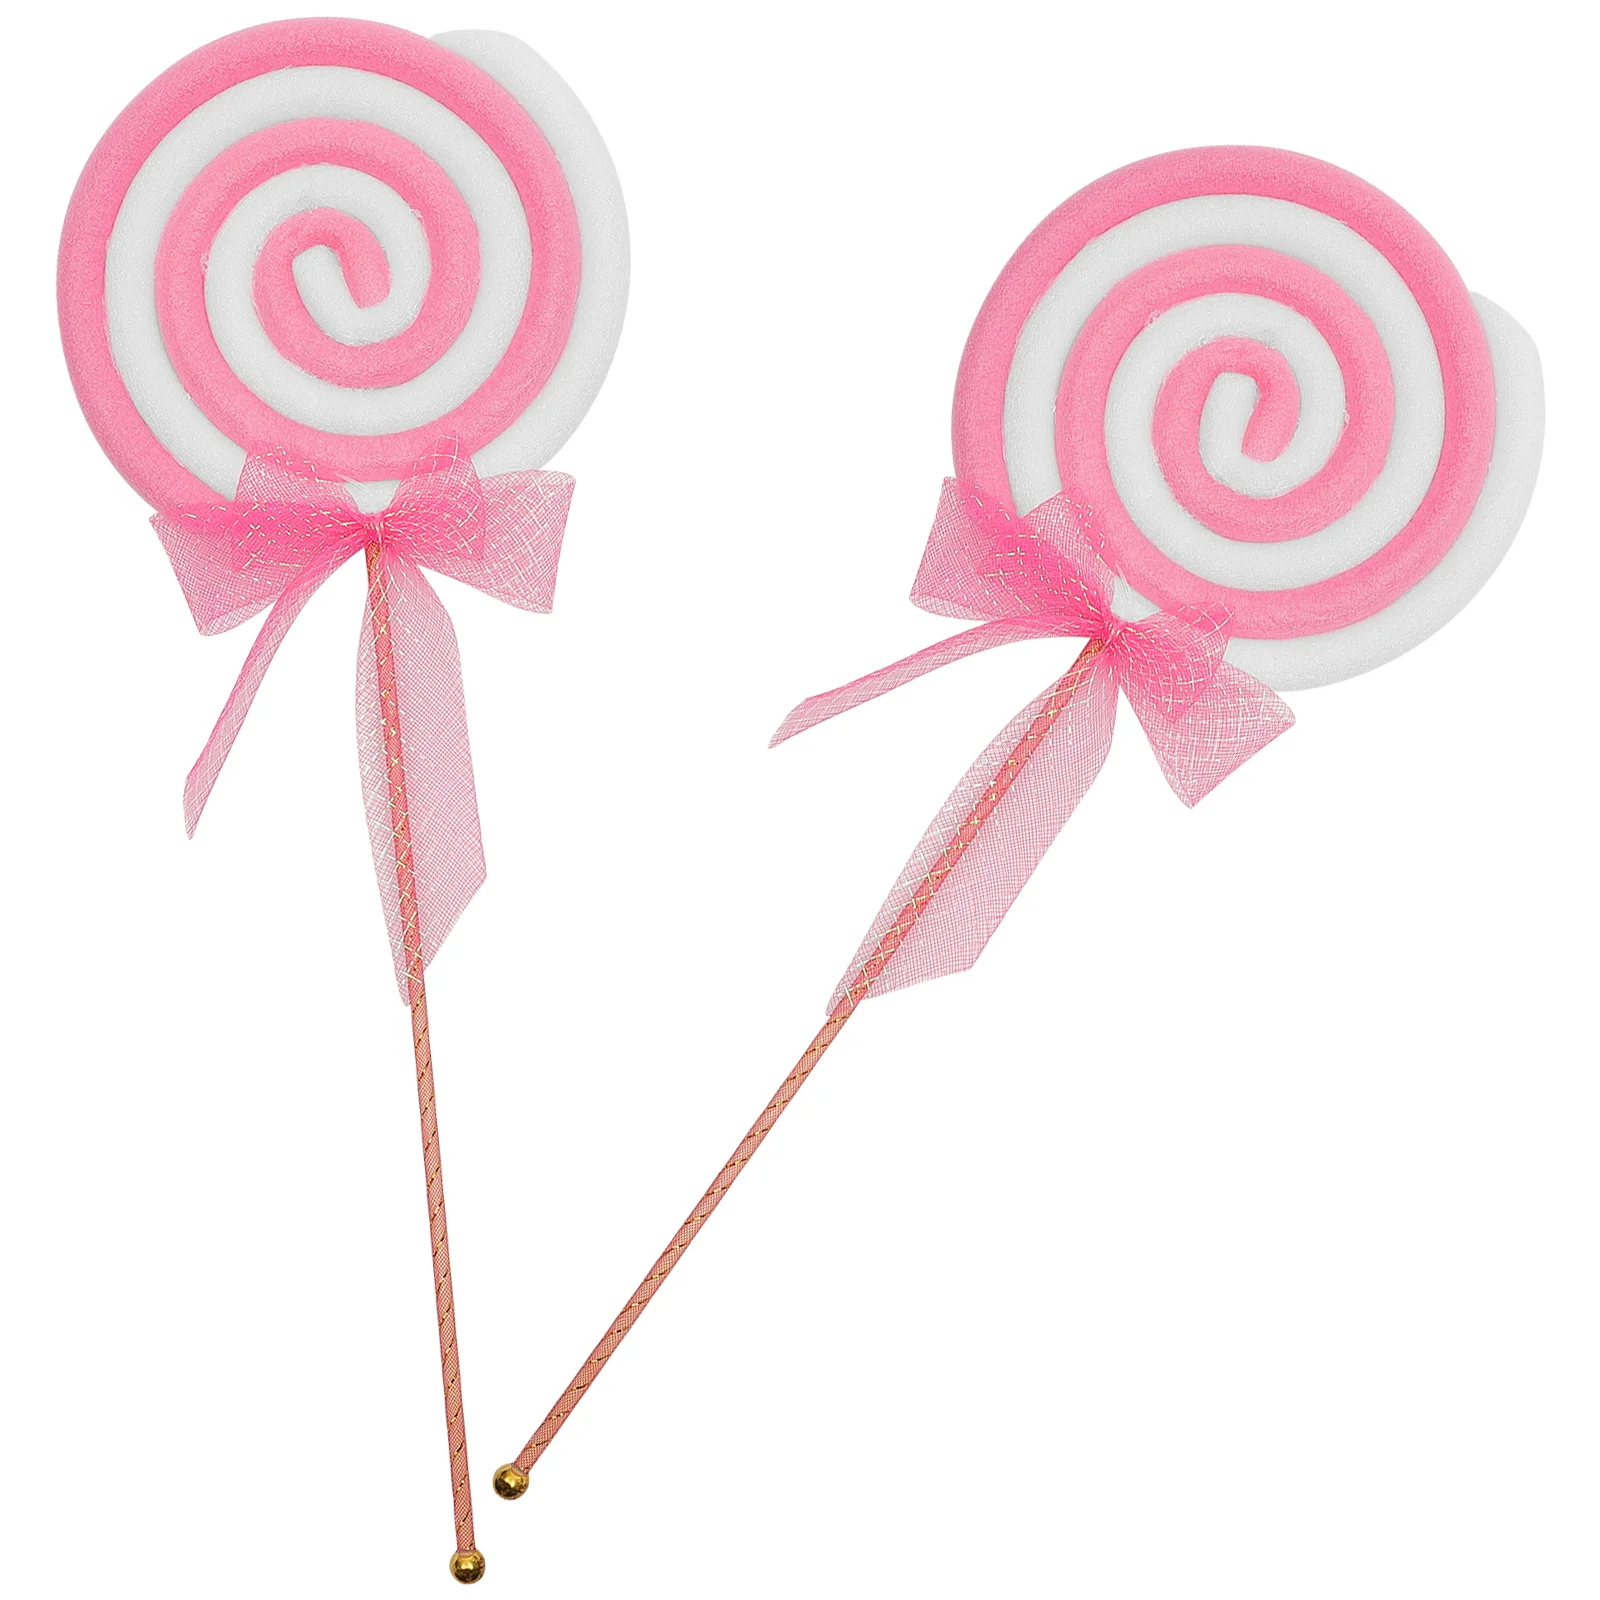 

2 Pcs Christmas Lollipop Props Child Pink Decorations Stick Plastic Unique Ornaments